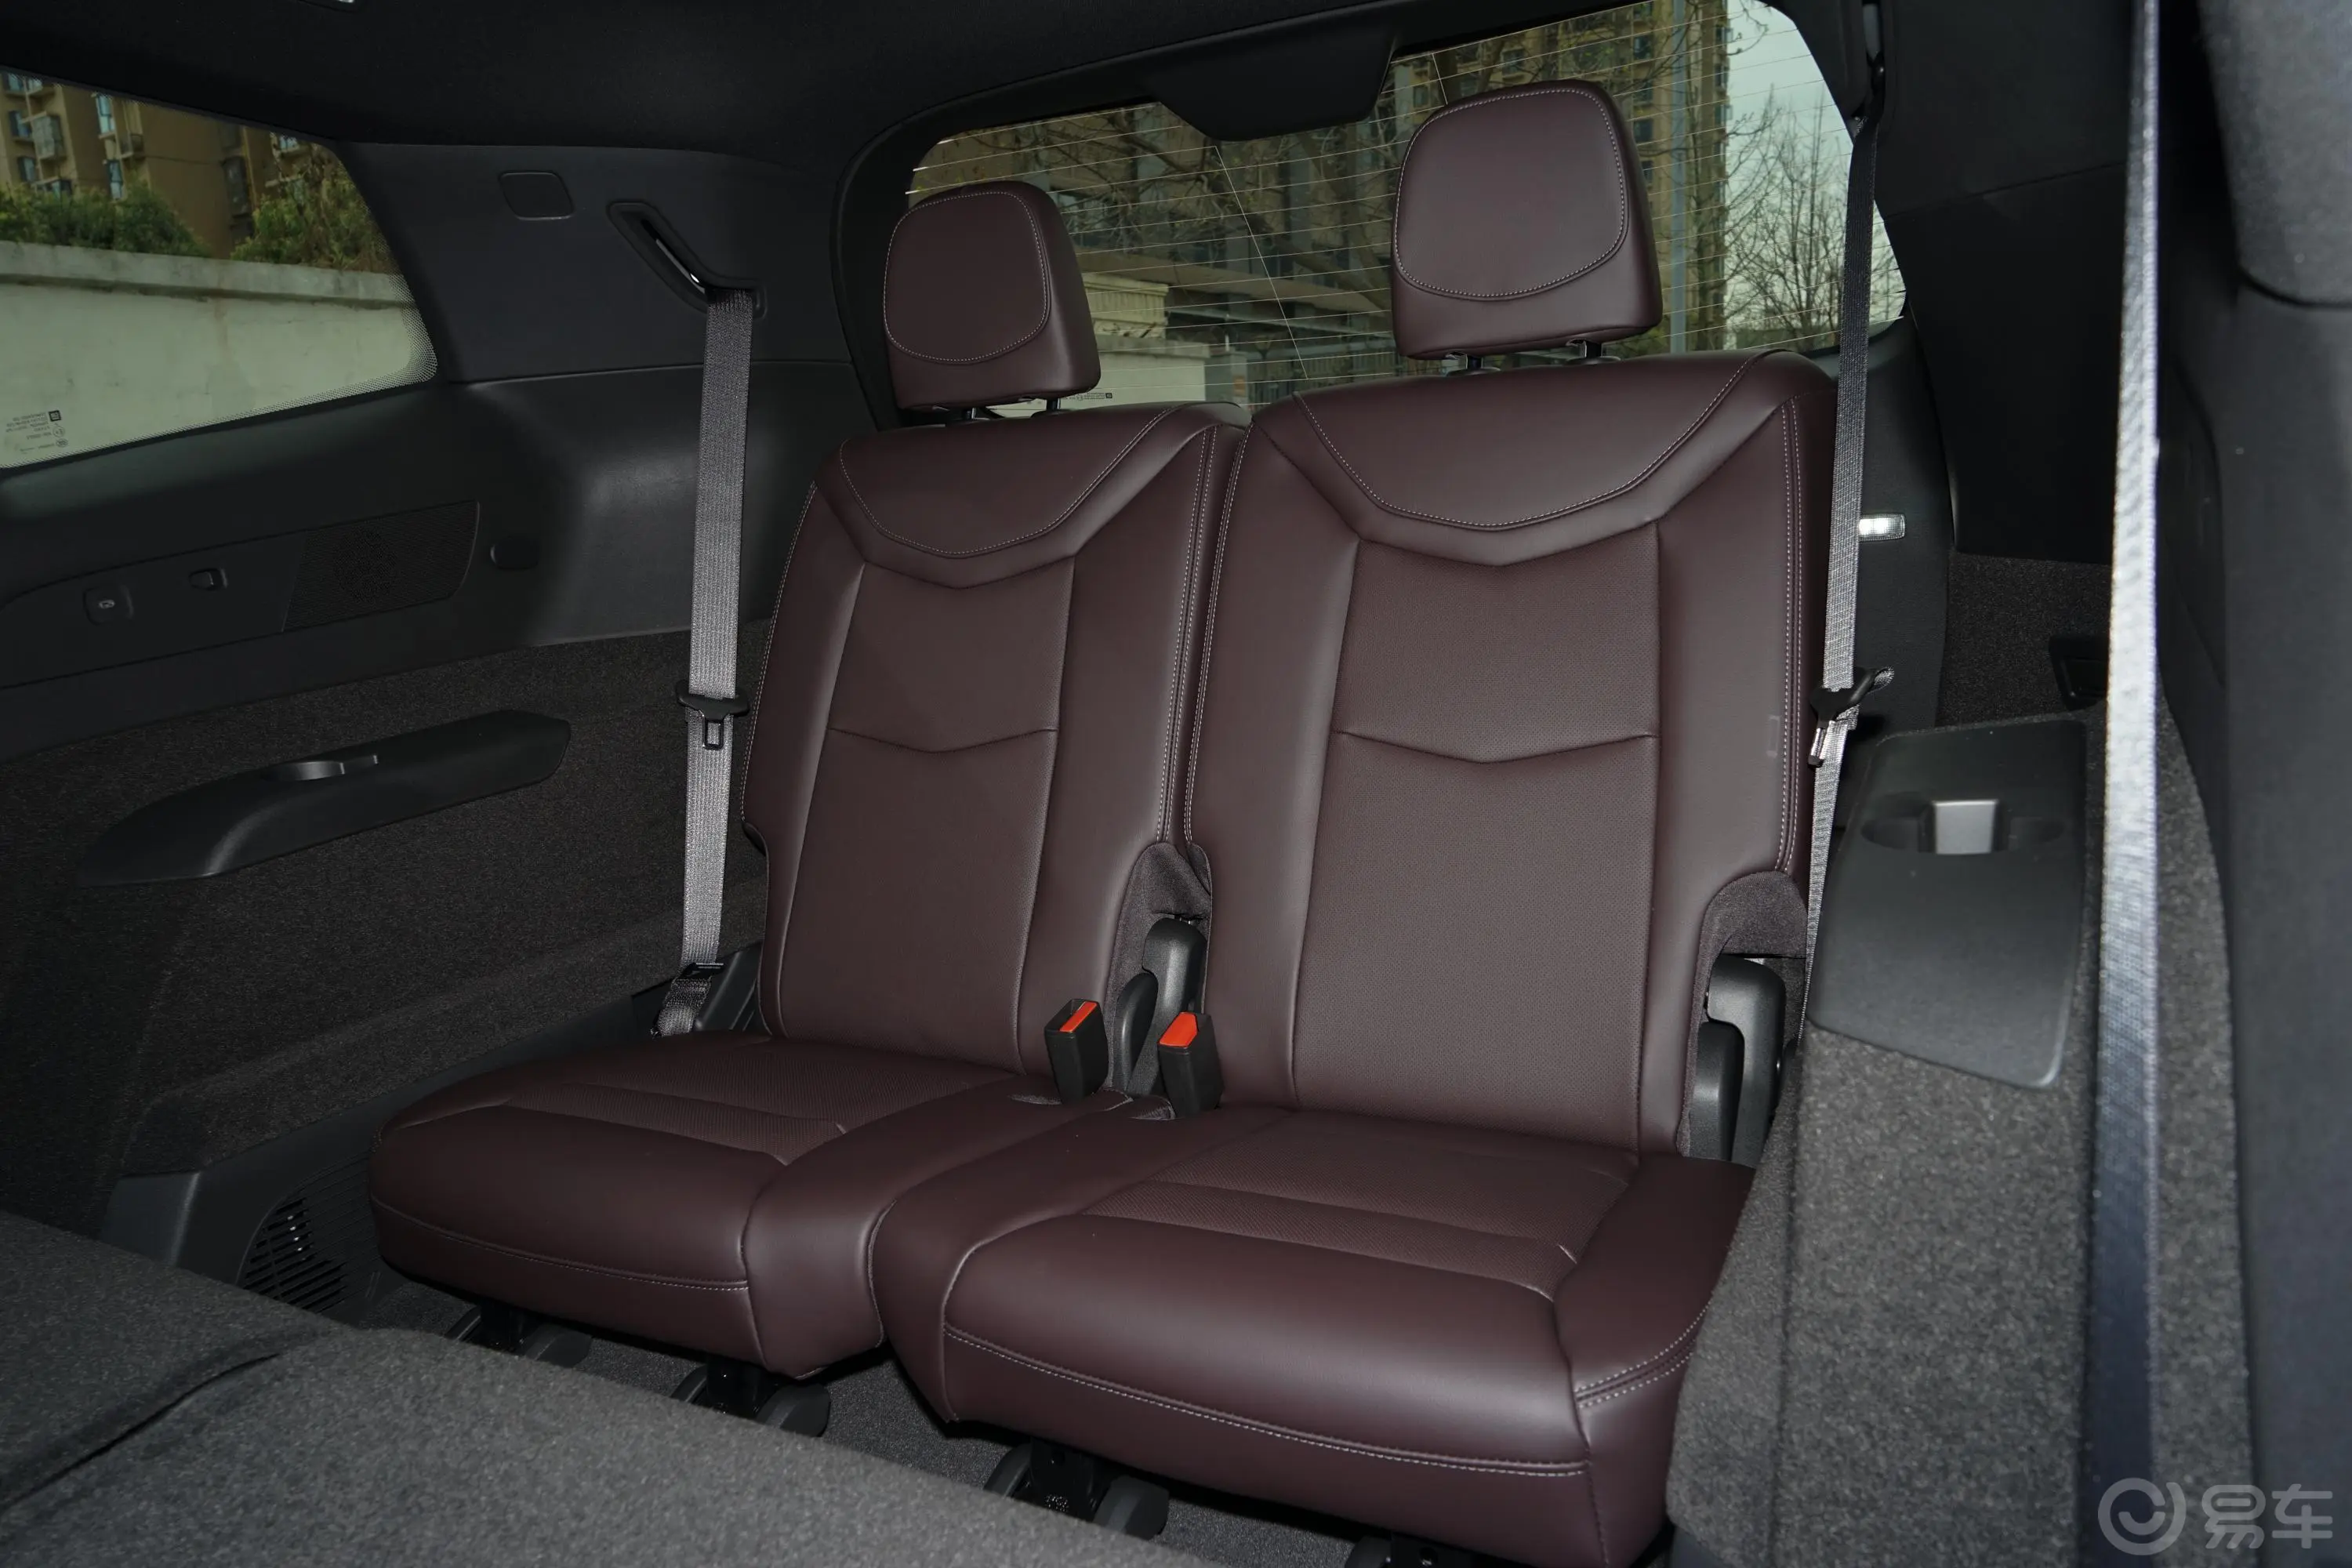 凯迪拉克XT62.0T 轻混 两驱豪华型 7座第三排座椅